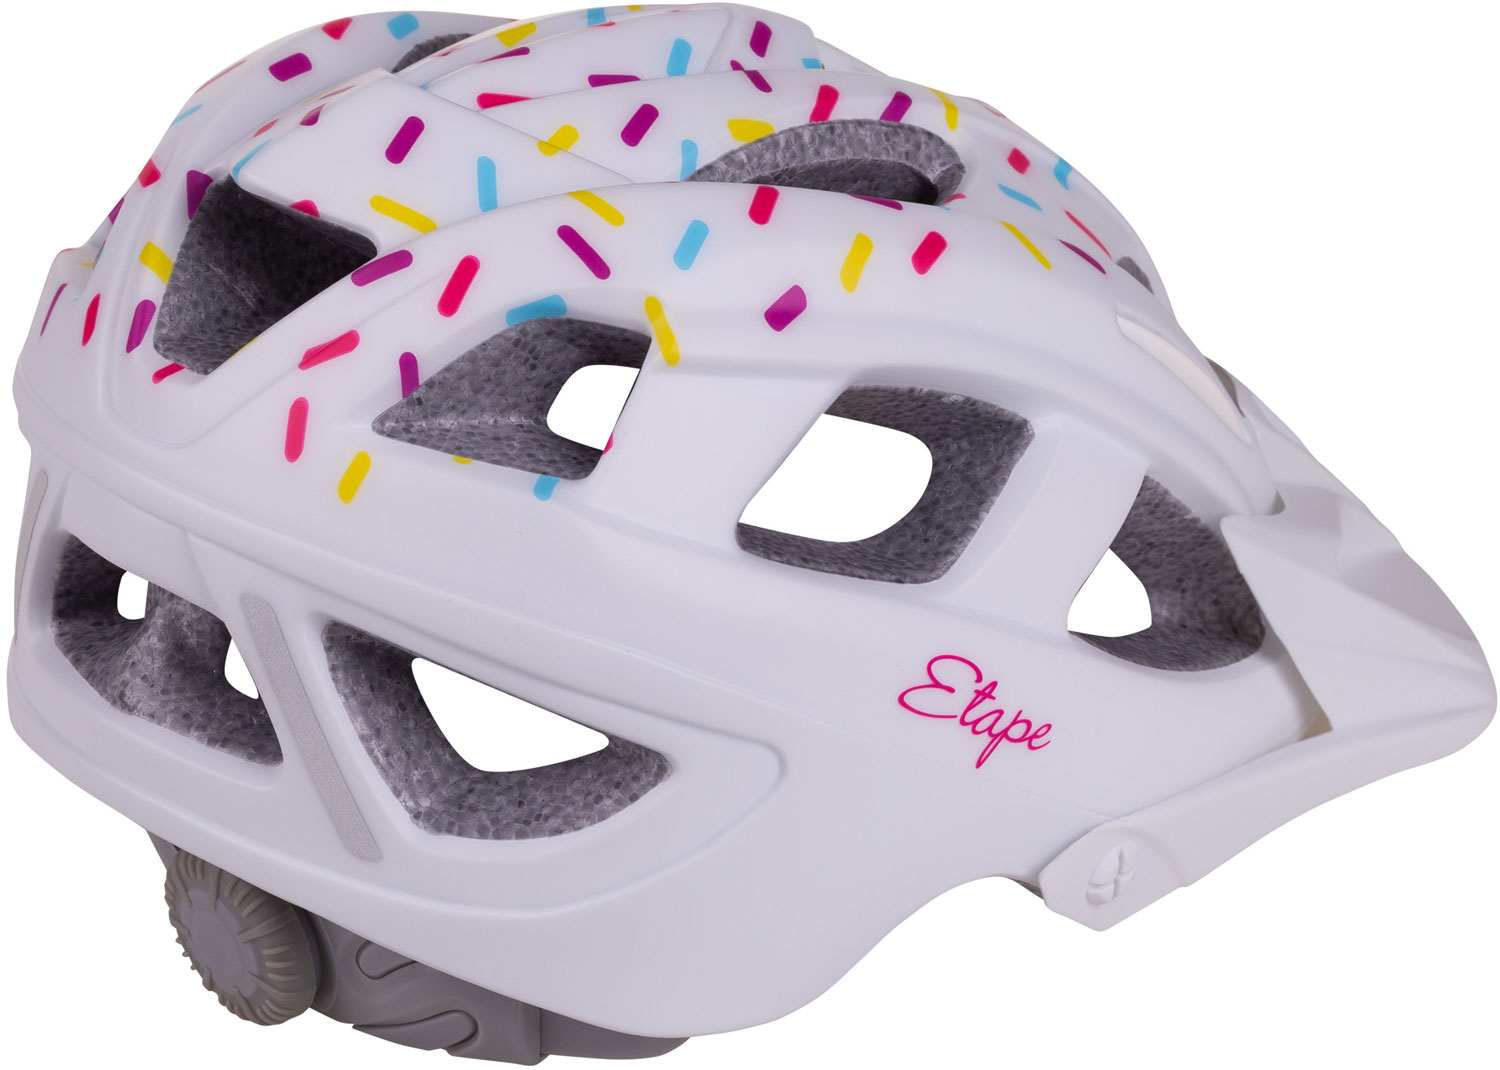 Girls’ cycling helmet